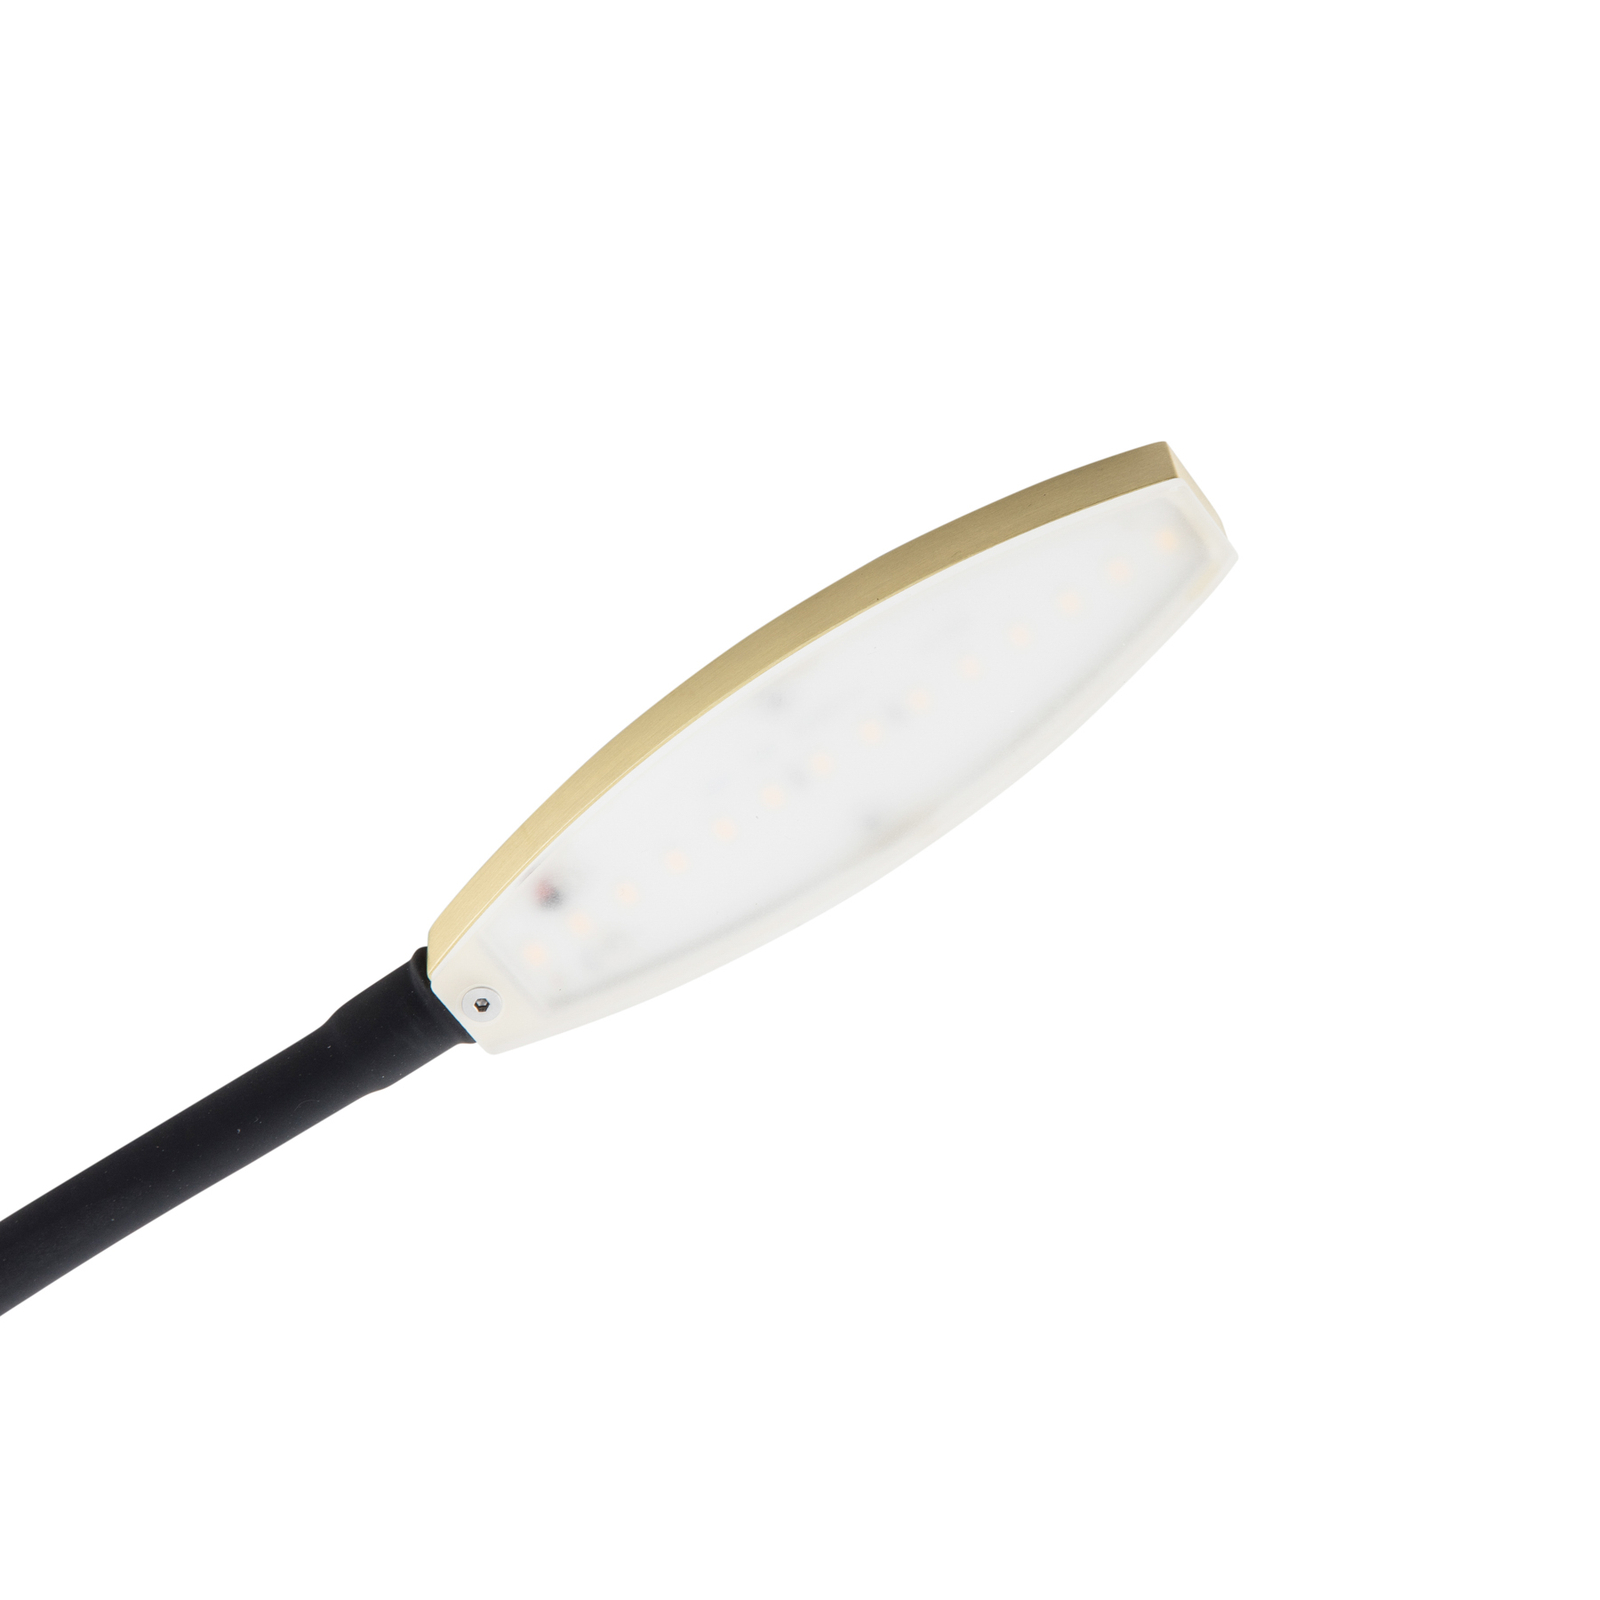 Φωτιστικό ανάγνωσης Lindby Flexola LED, χρυσό, στρογγυλό, σίδερο, βύσμα